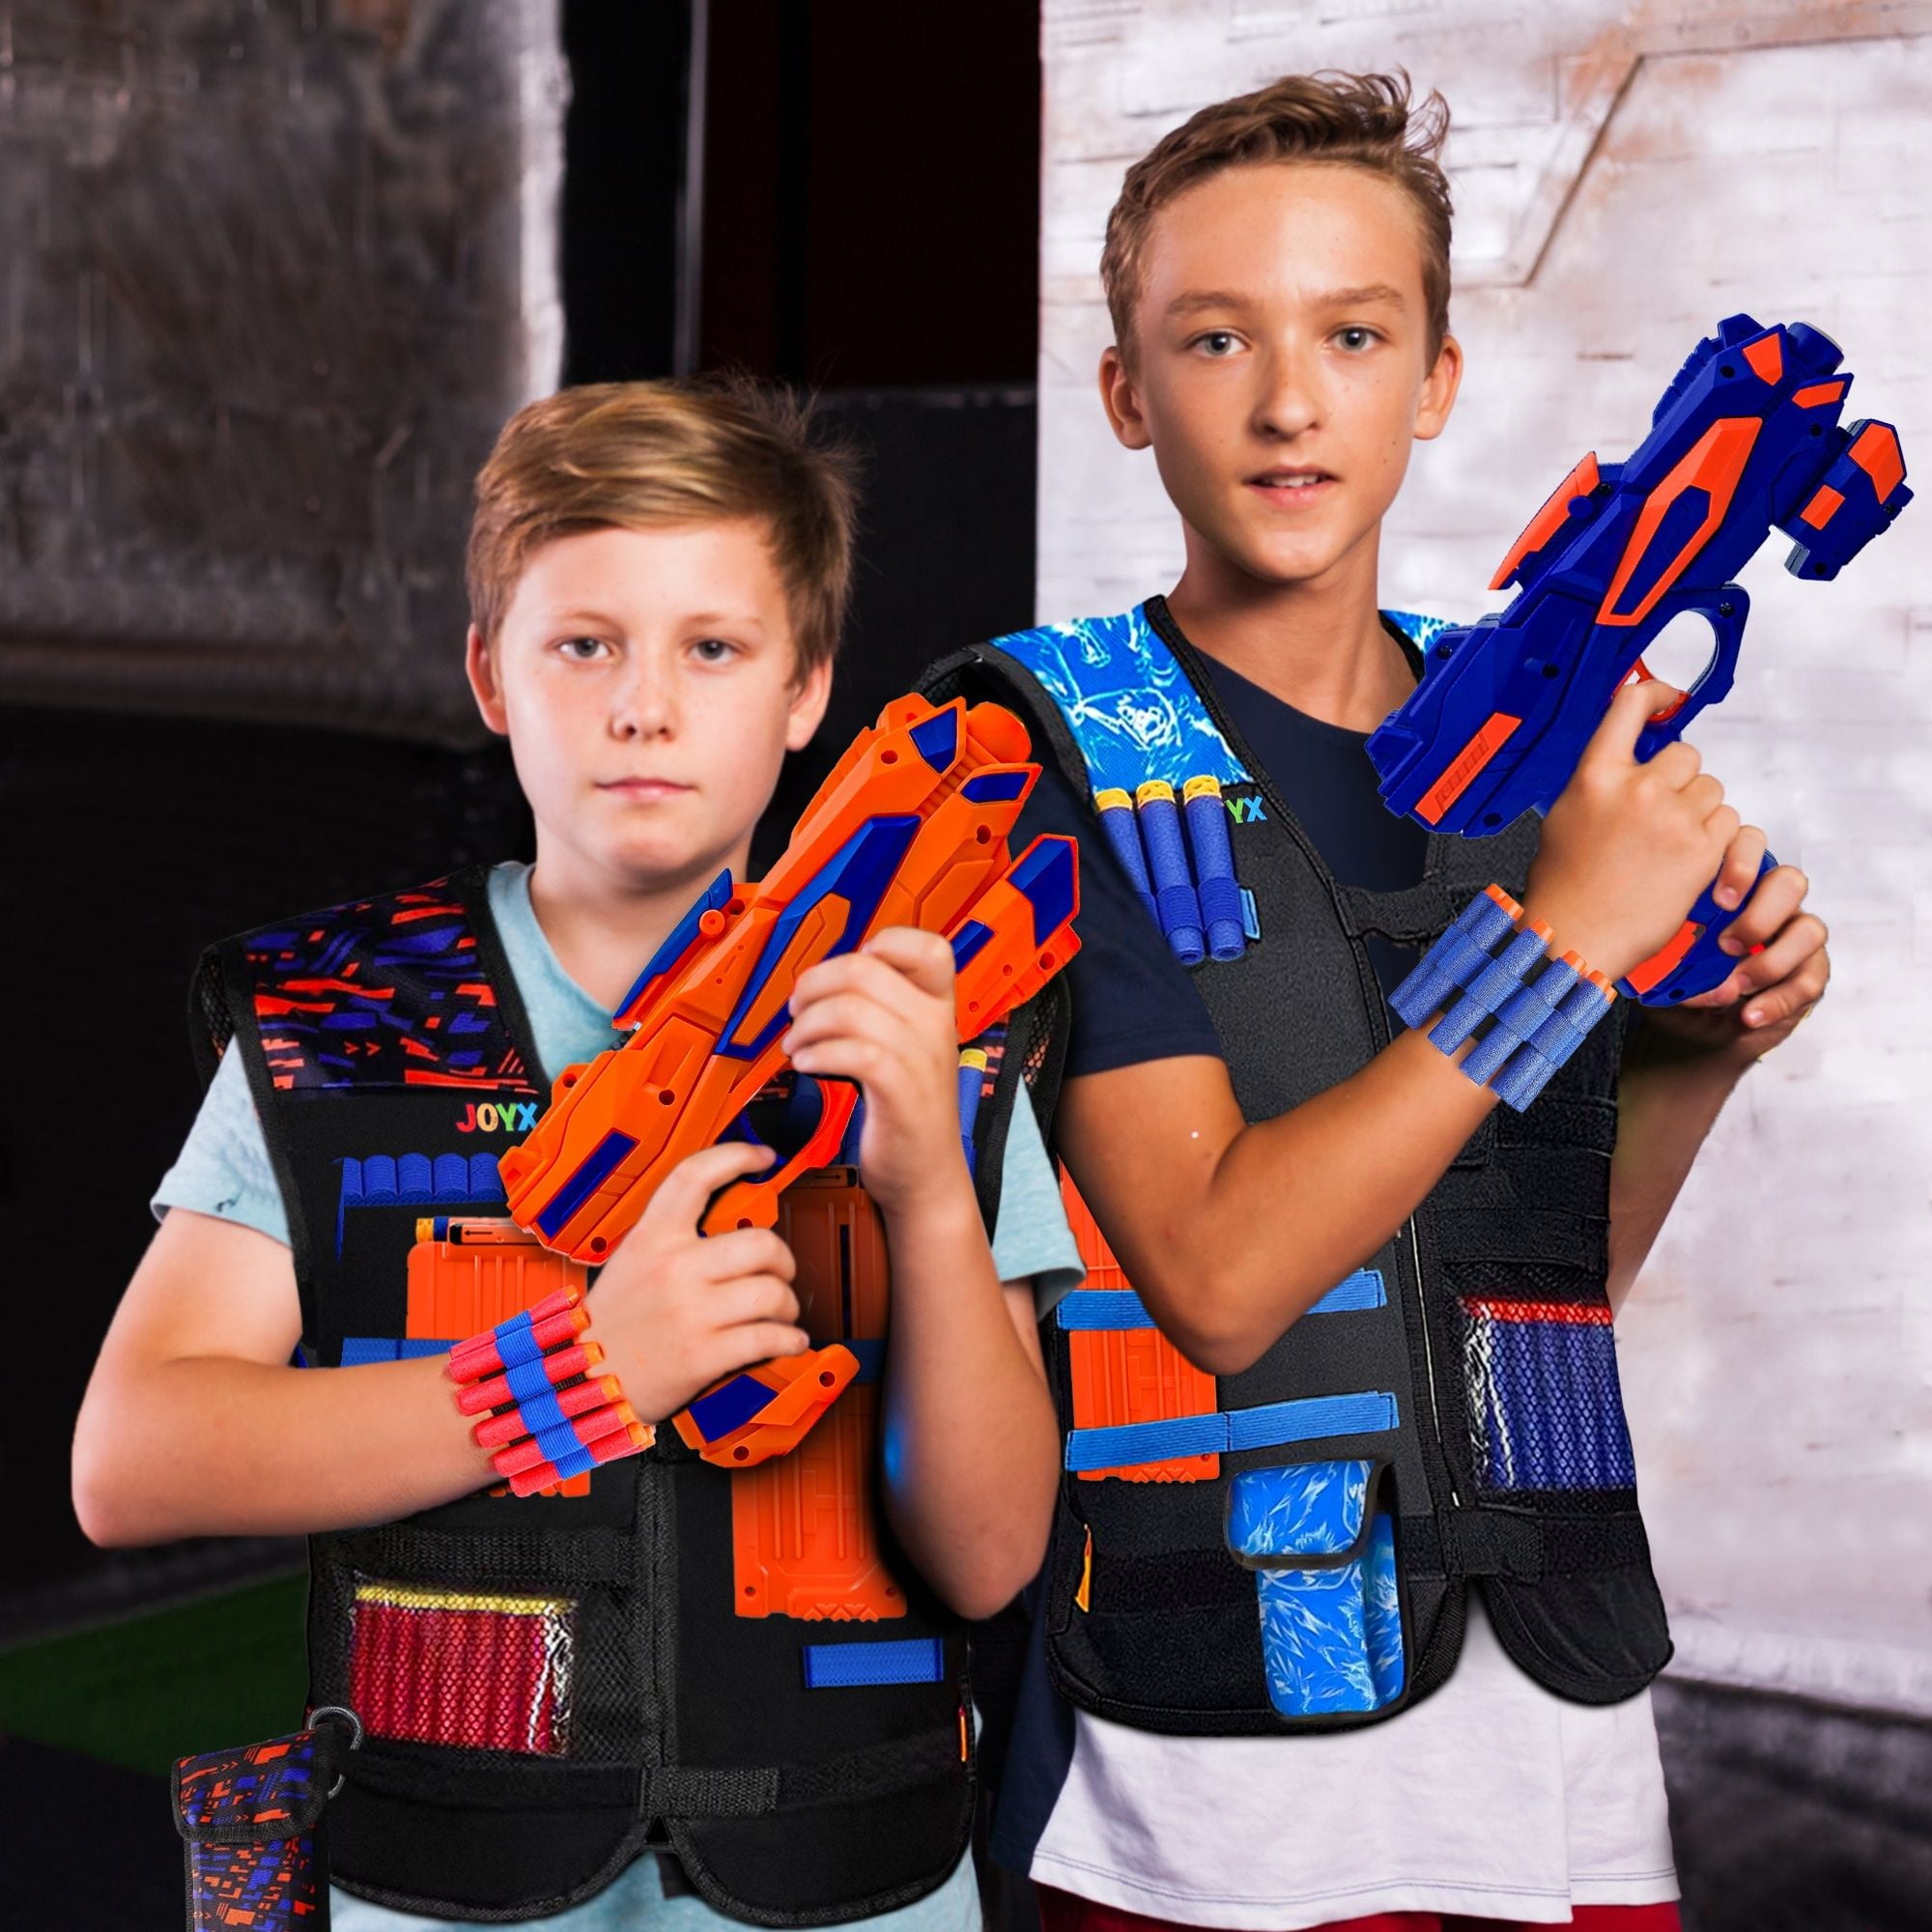 Kids Tactical Vest Kit for Nerf N-strike Elite, 50 Bullets Refill Darts  Full Kit